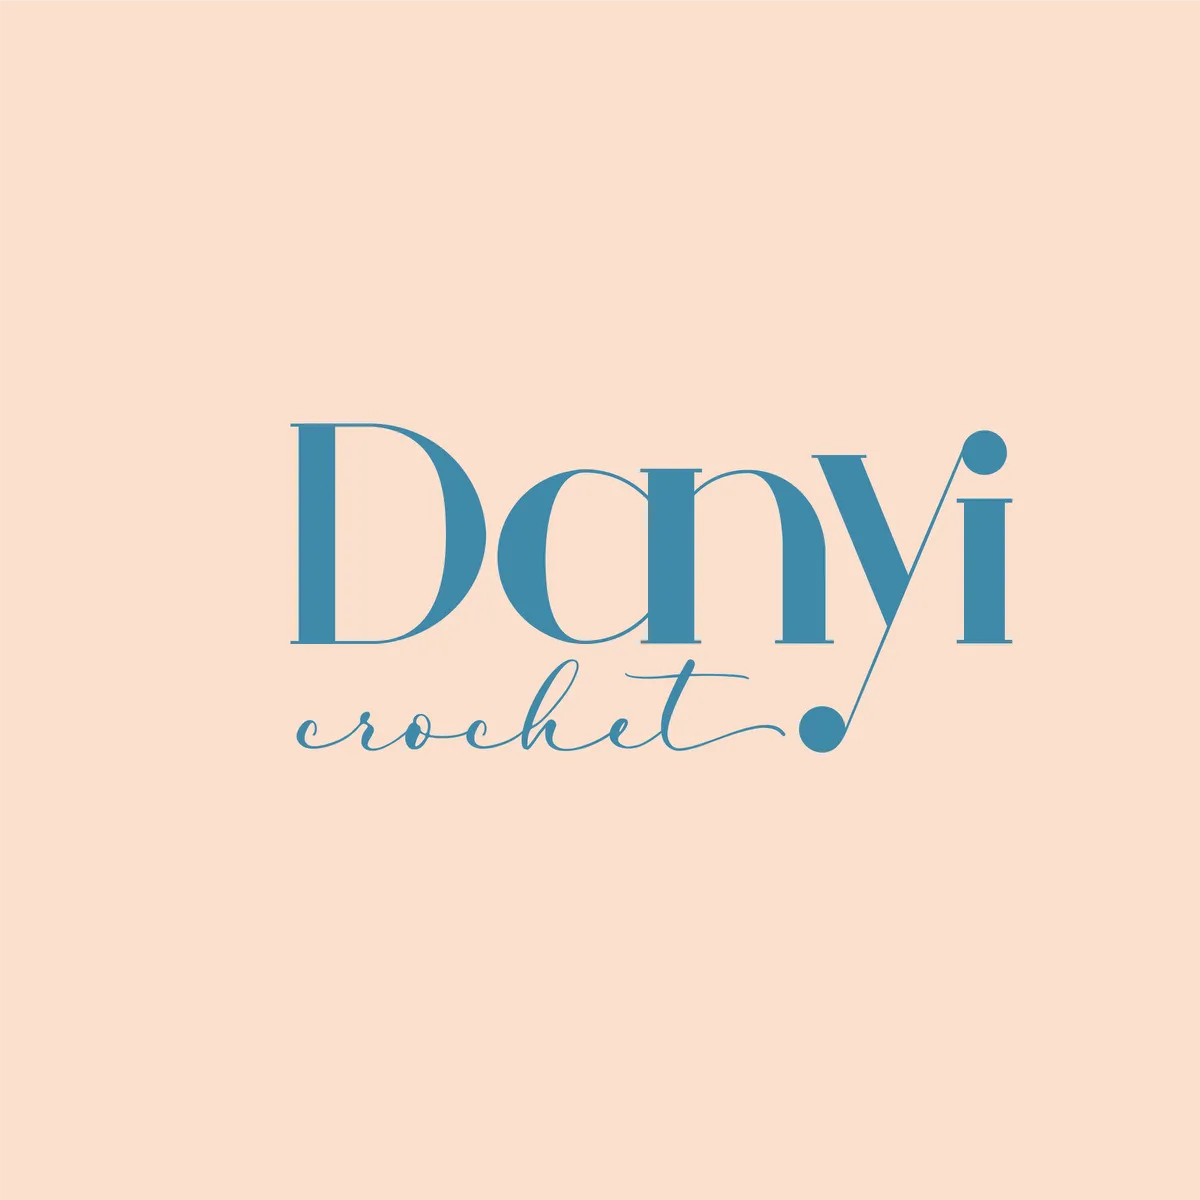 Danyi Crochet